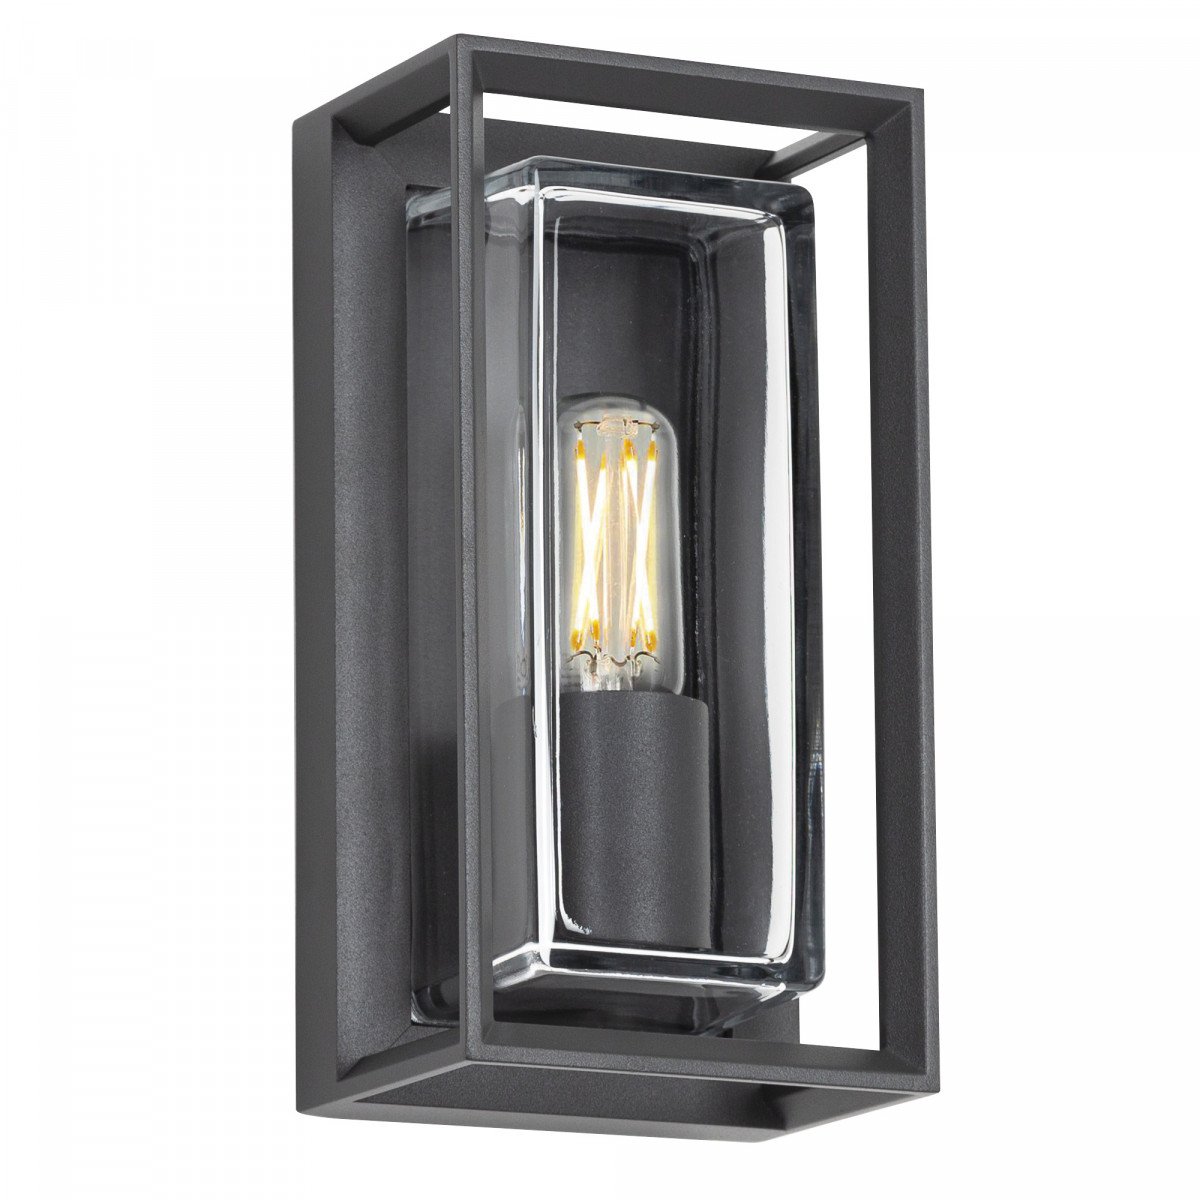 wandlamp voor aan de buitenmuur, box design, strak moderne buitenverlichting voor aan de wand, antraciet frame en heldere beglazing